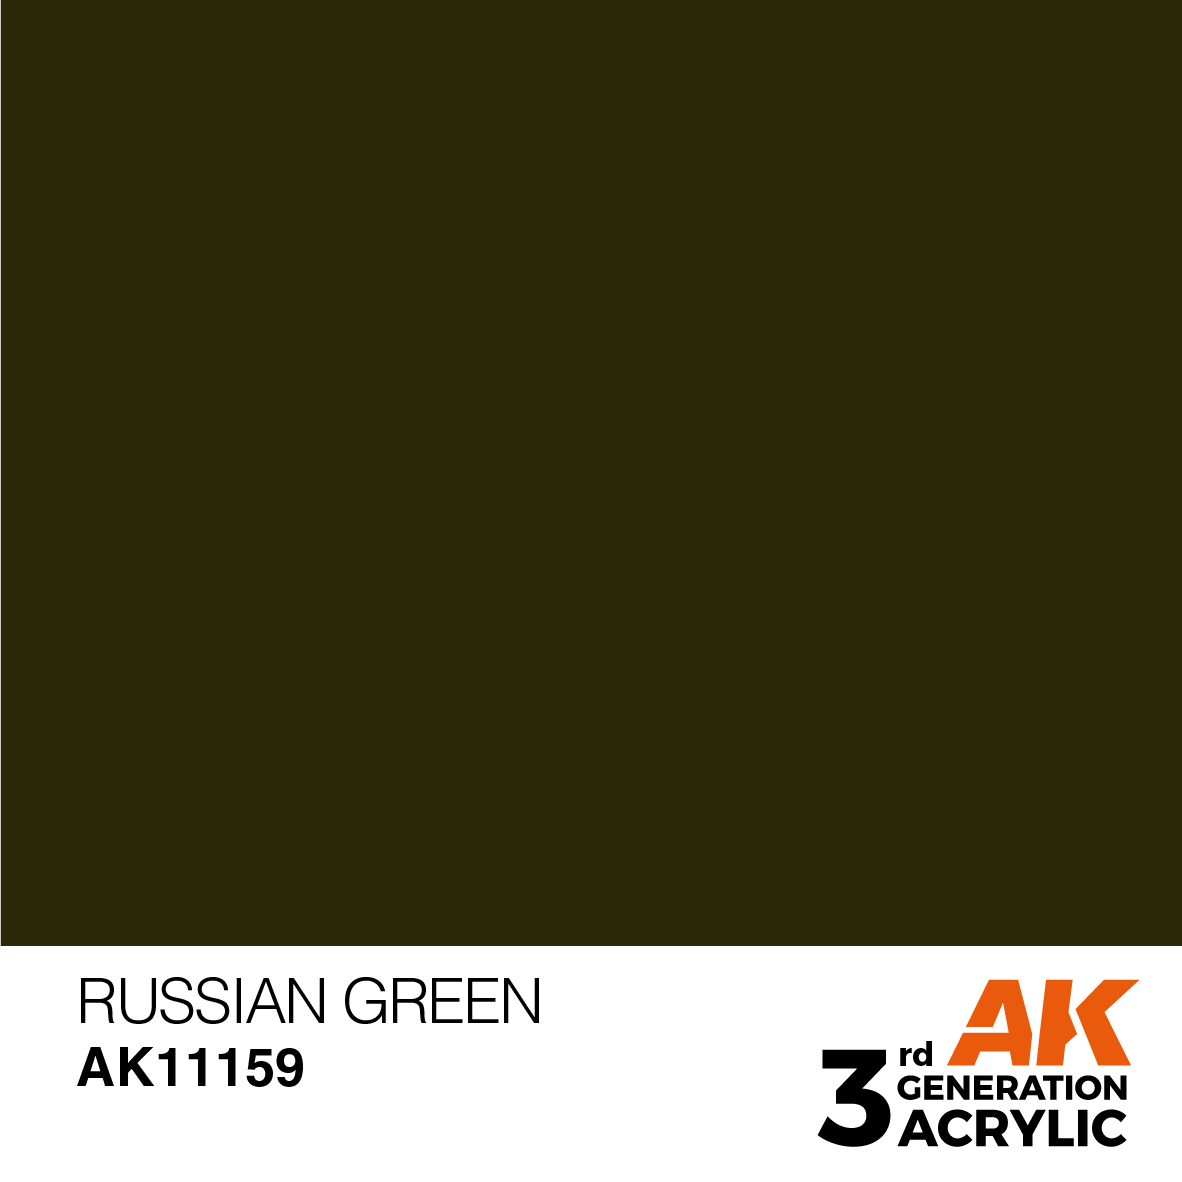 RUSSIAN GREEN – STANDARD